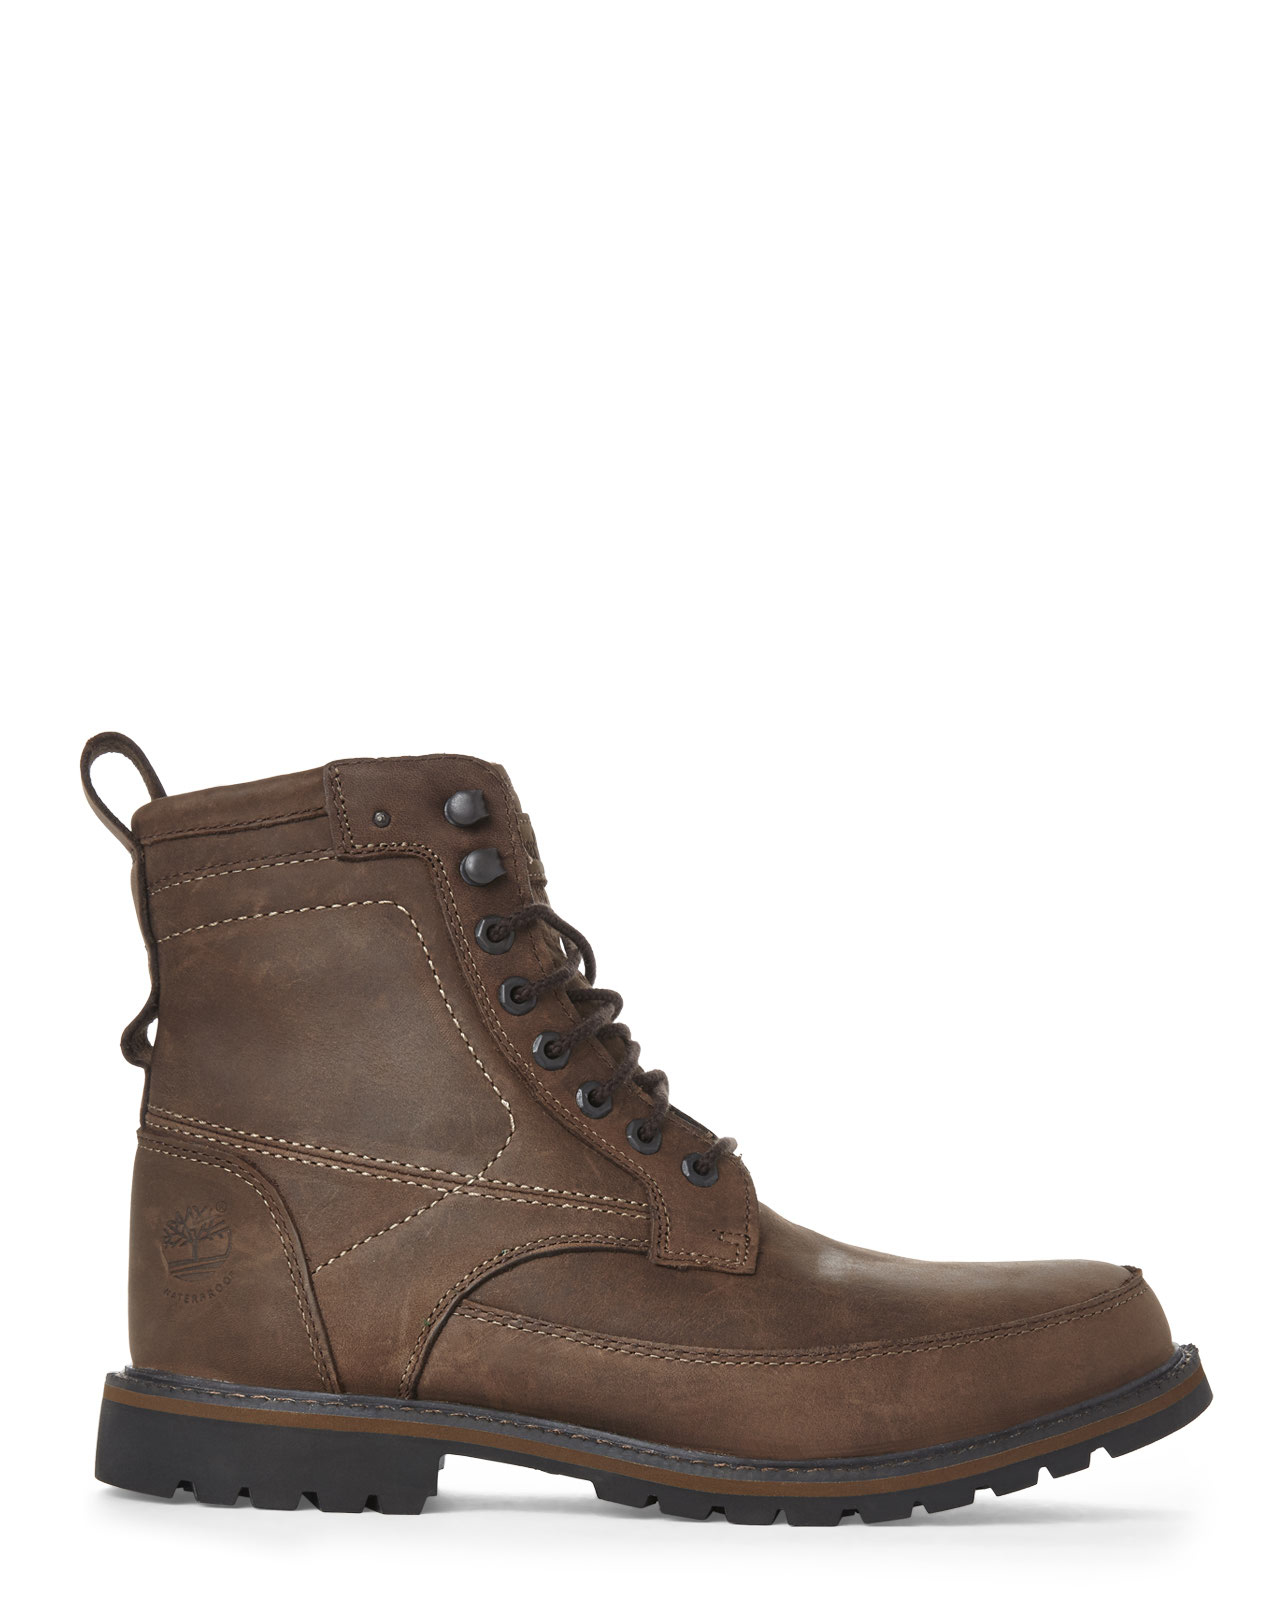 Lyst - Timberland Dark Brown Chestnut Ridge Boots in Brown for Men